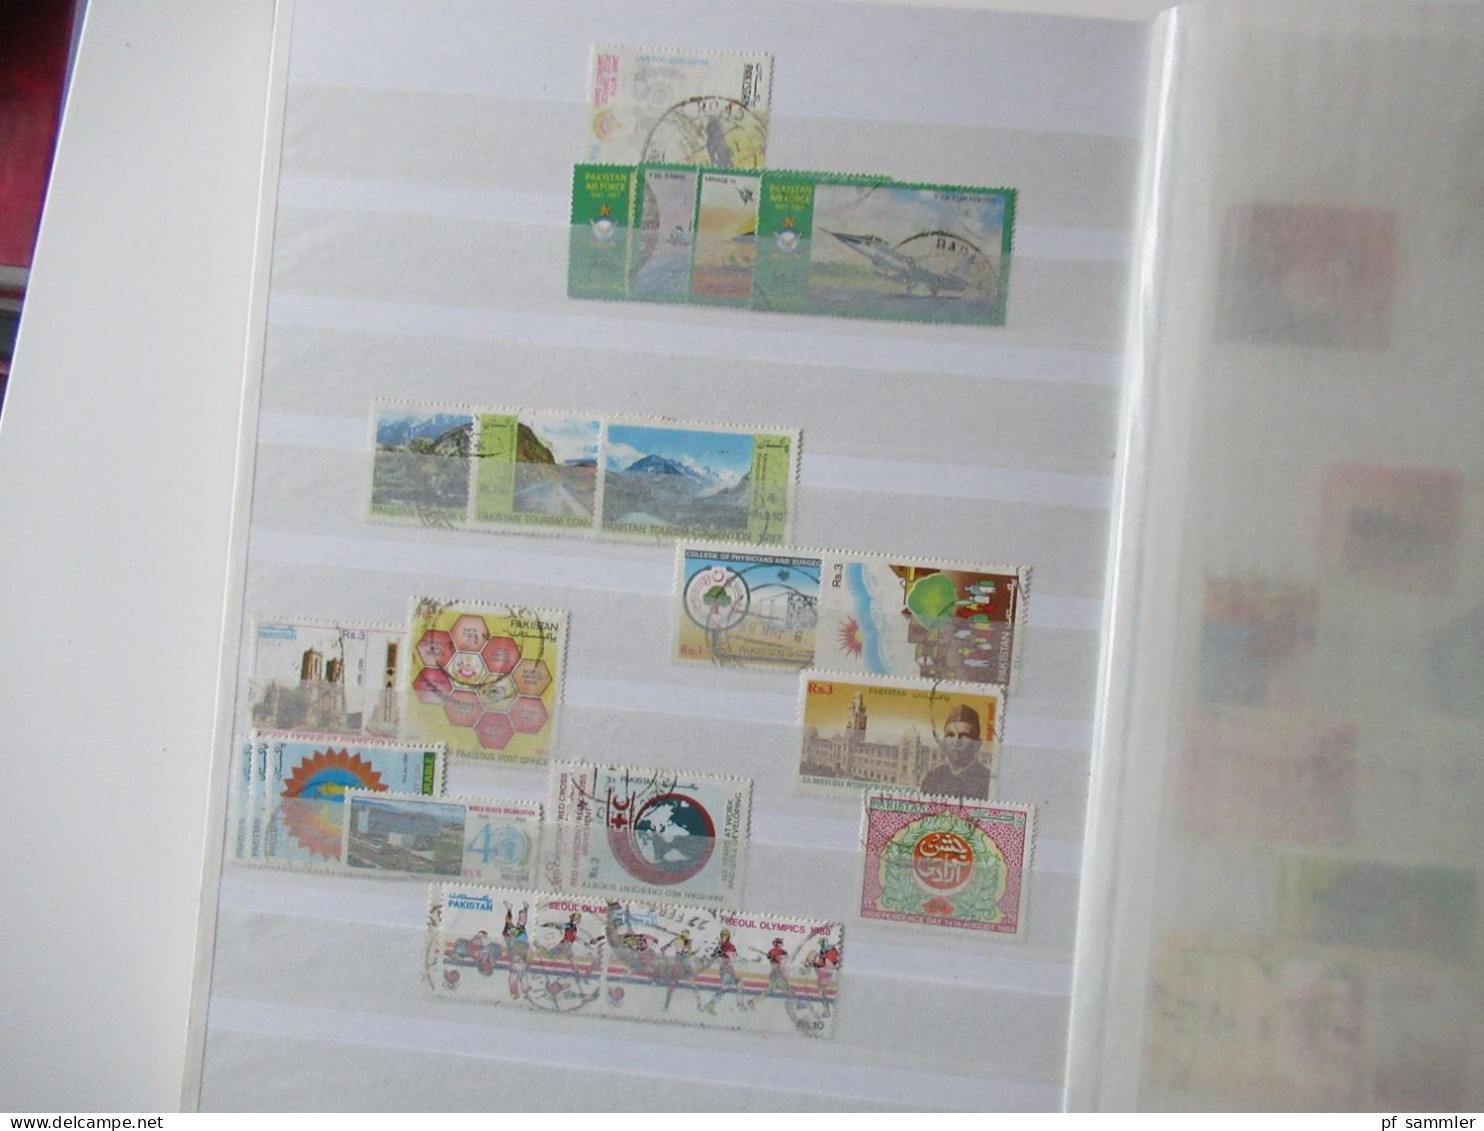 Sammlung / Lagerbuch Asien Pakistan ab India Postage mit Aufdruck - ca. 2012 viele gestempelte Marken / Fundgrube!!